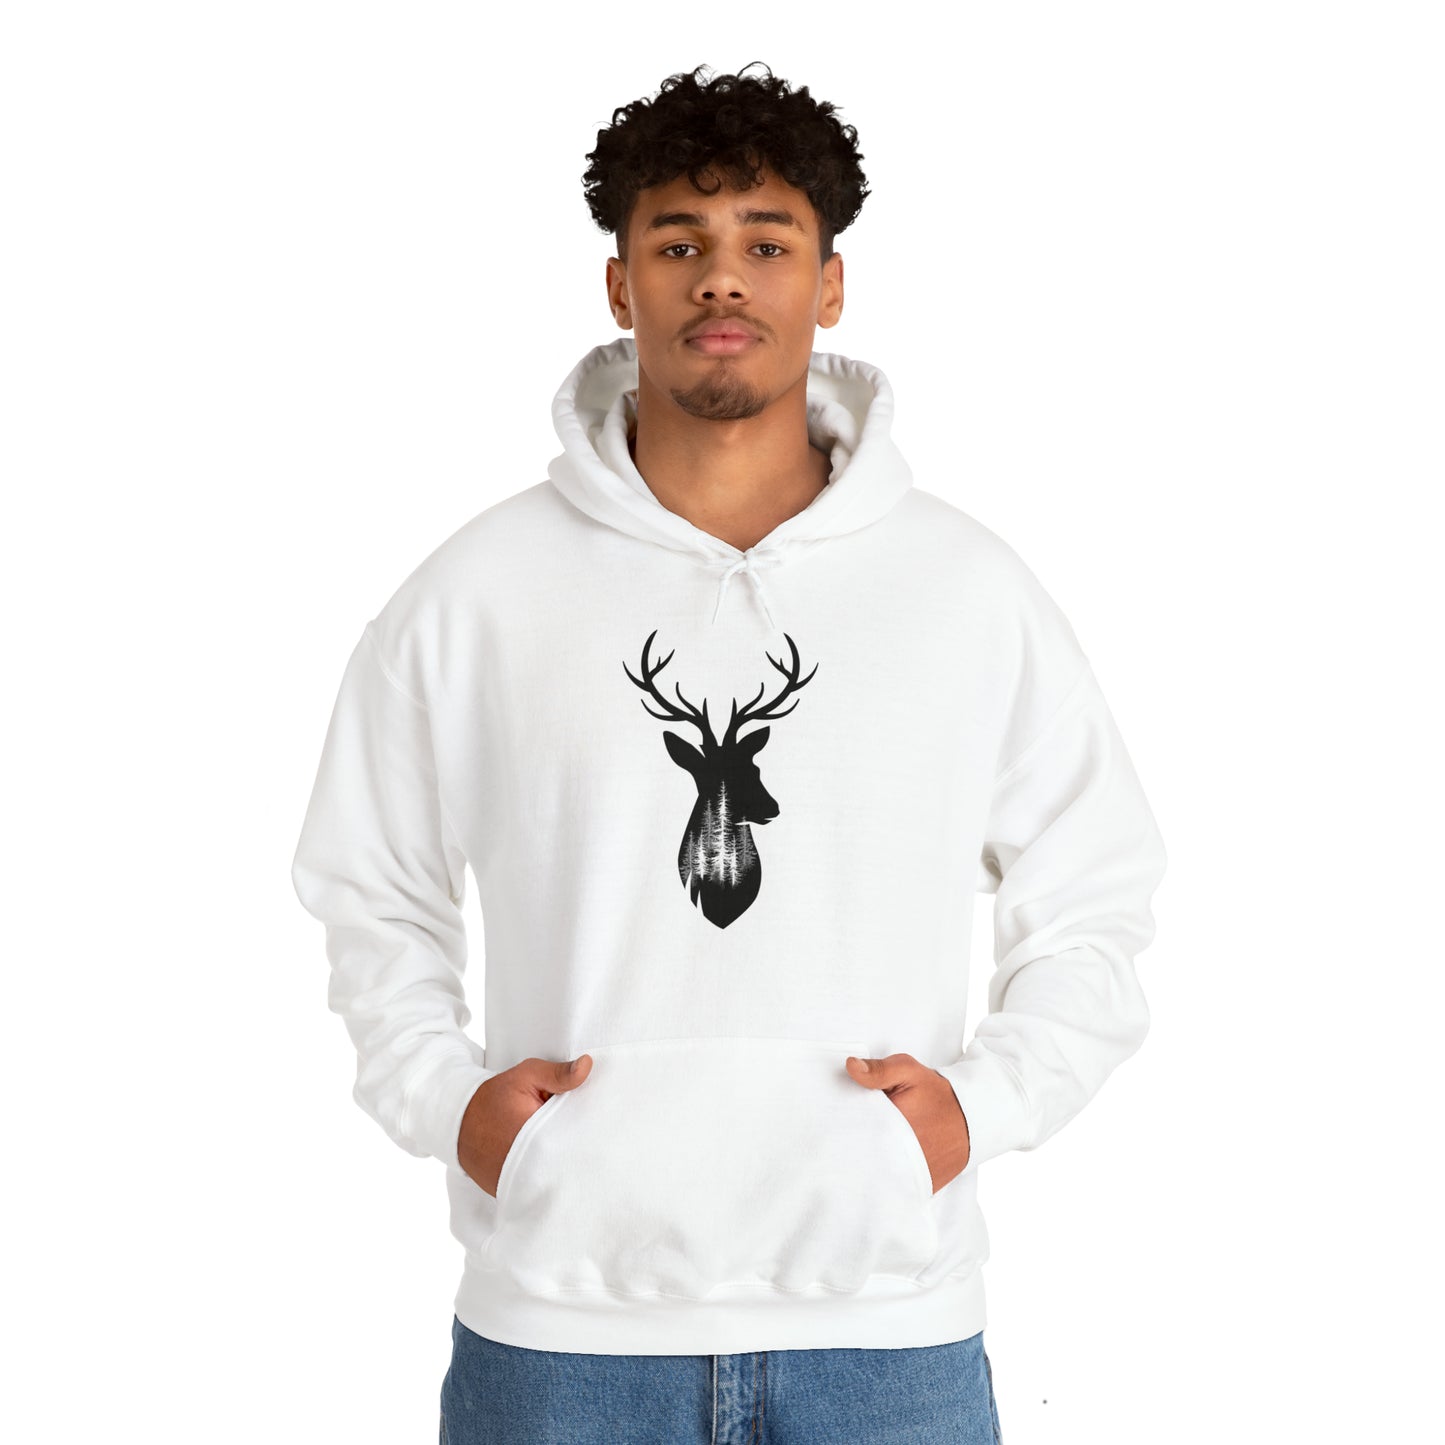 Deer/Tree silhouette - Unisex Heavy Blend™ Hooded Sweatshirt